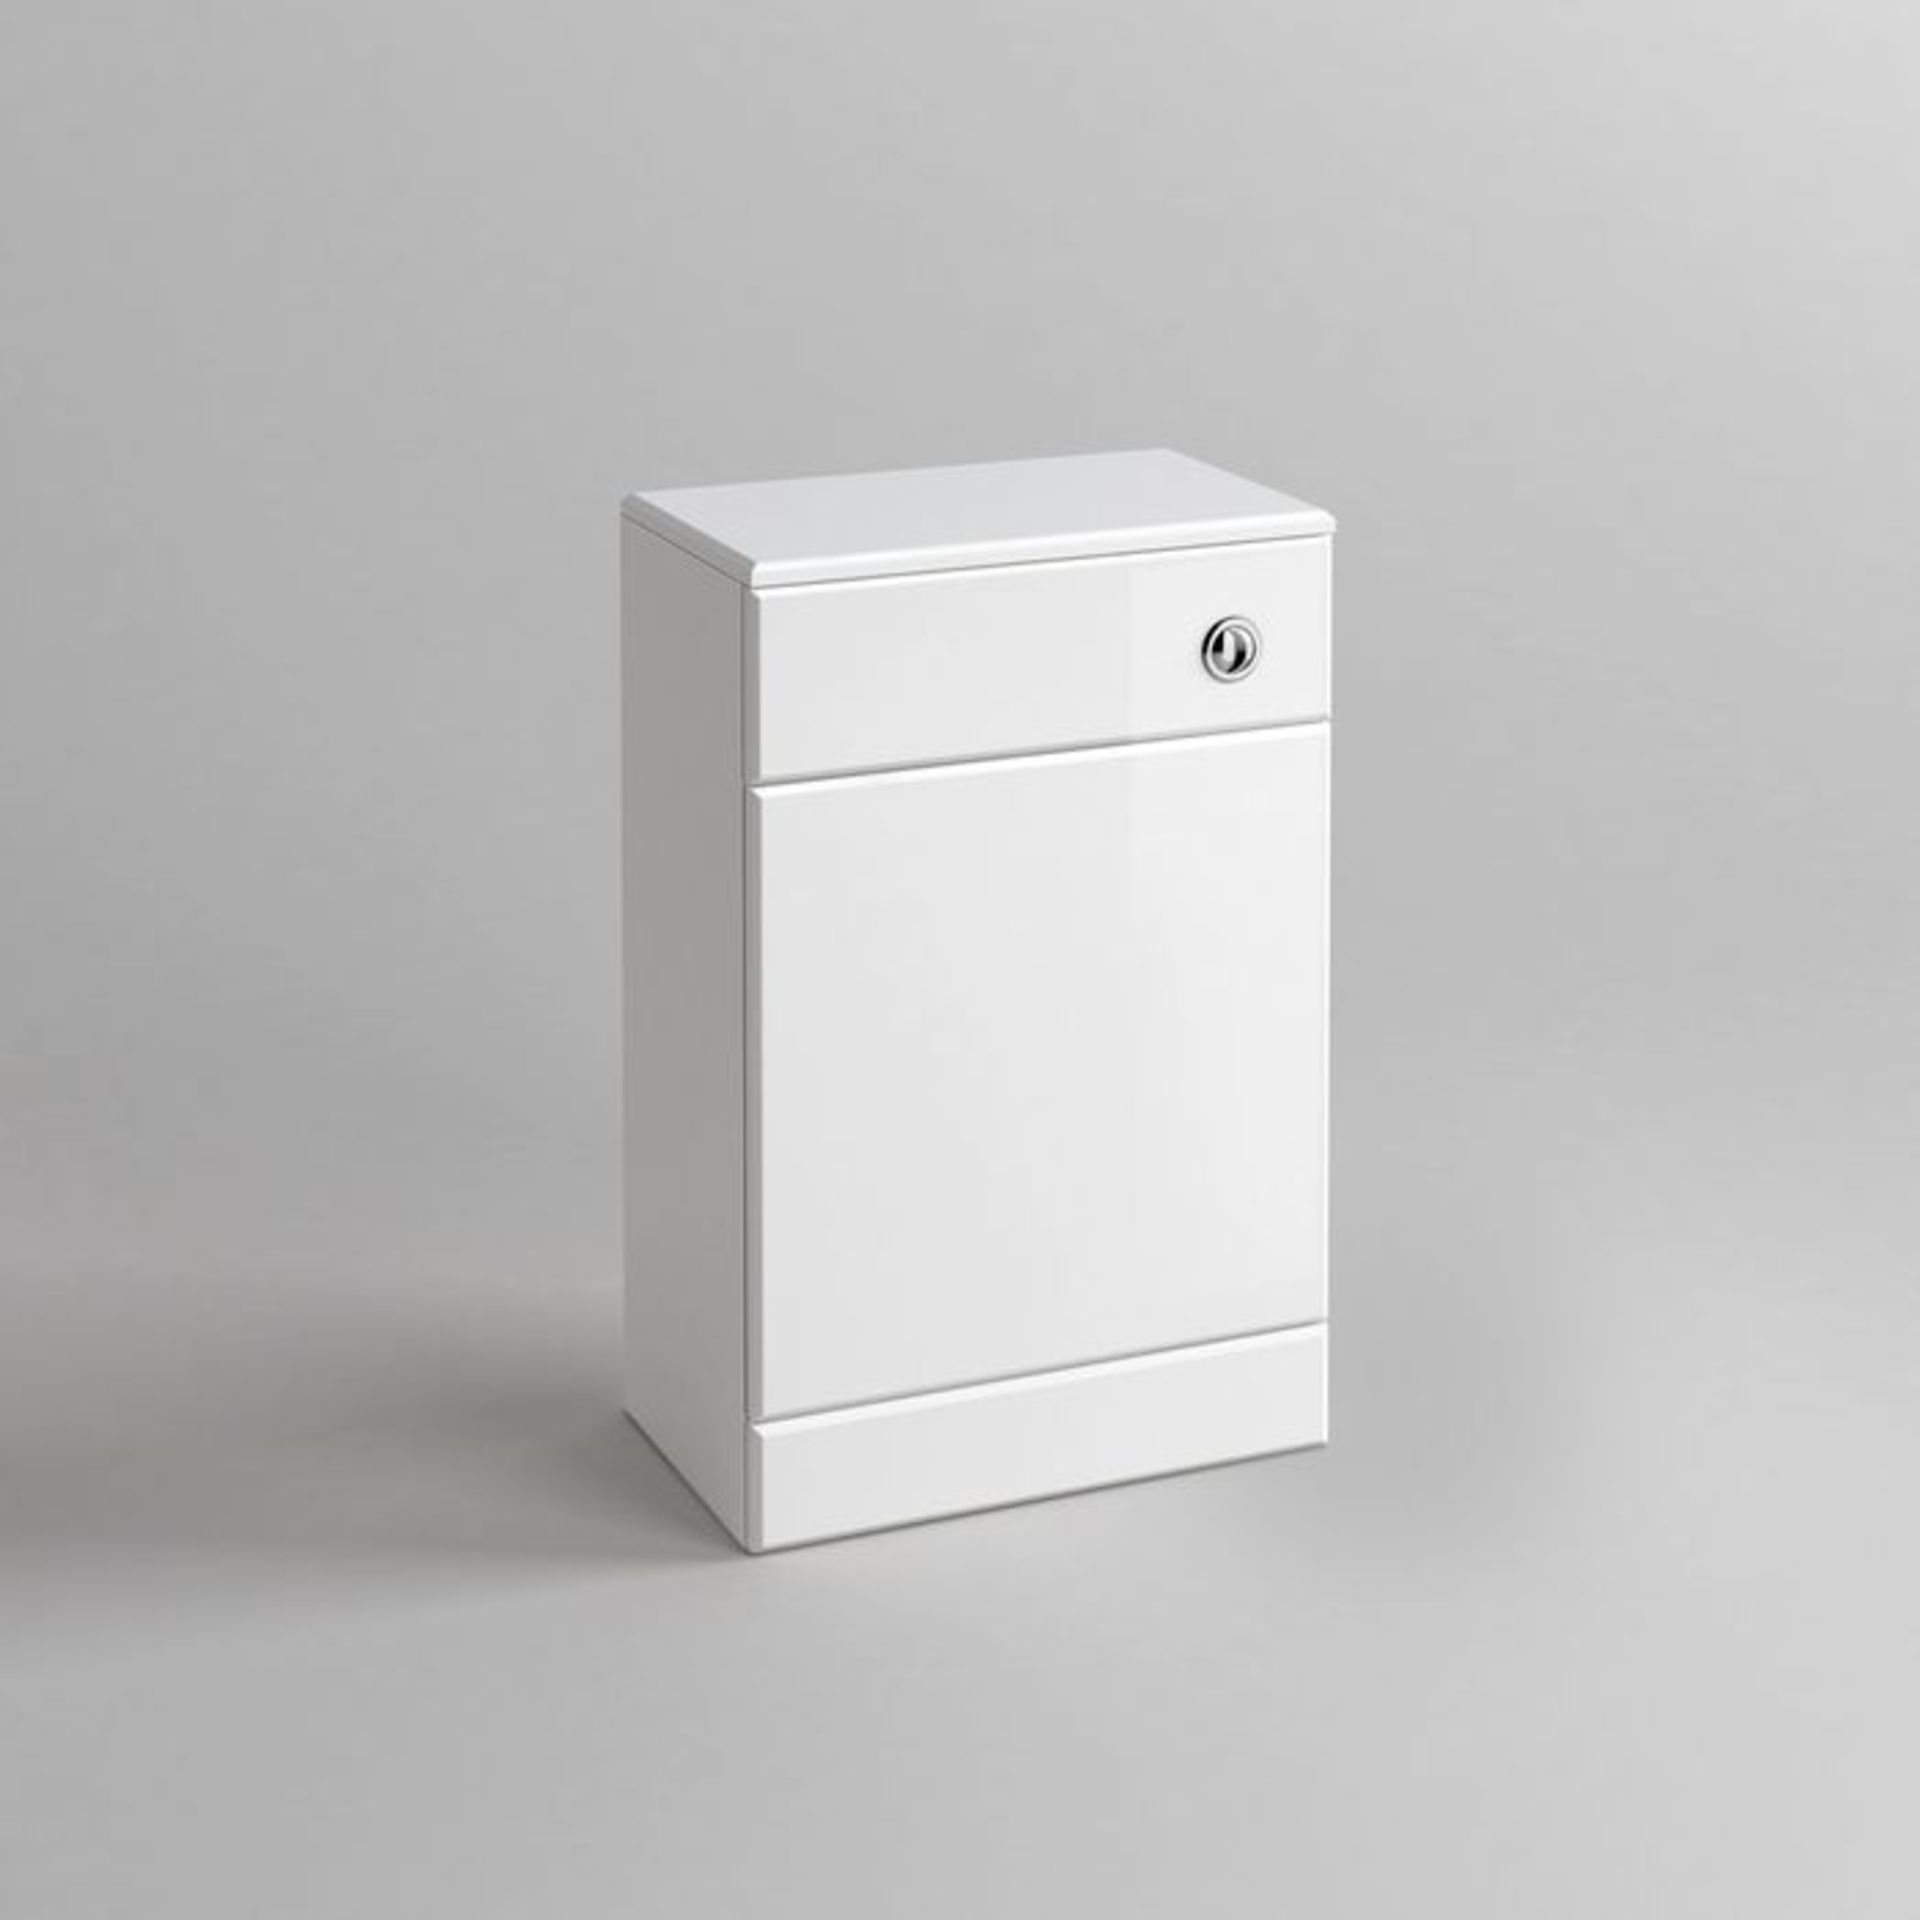 (GR26) 500x300mm Quartz Gloss White Back To Wall Toilet Unit £143.99 Pristine gloss white finish - Image 6 of 6